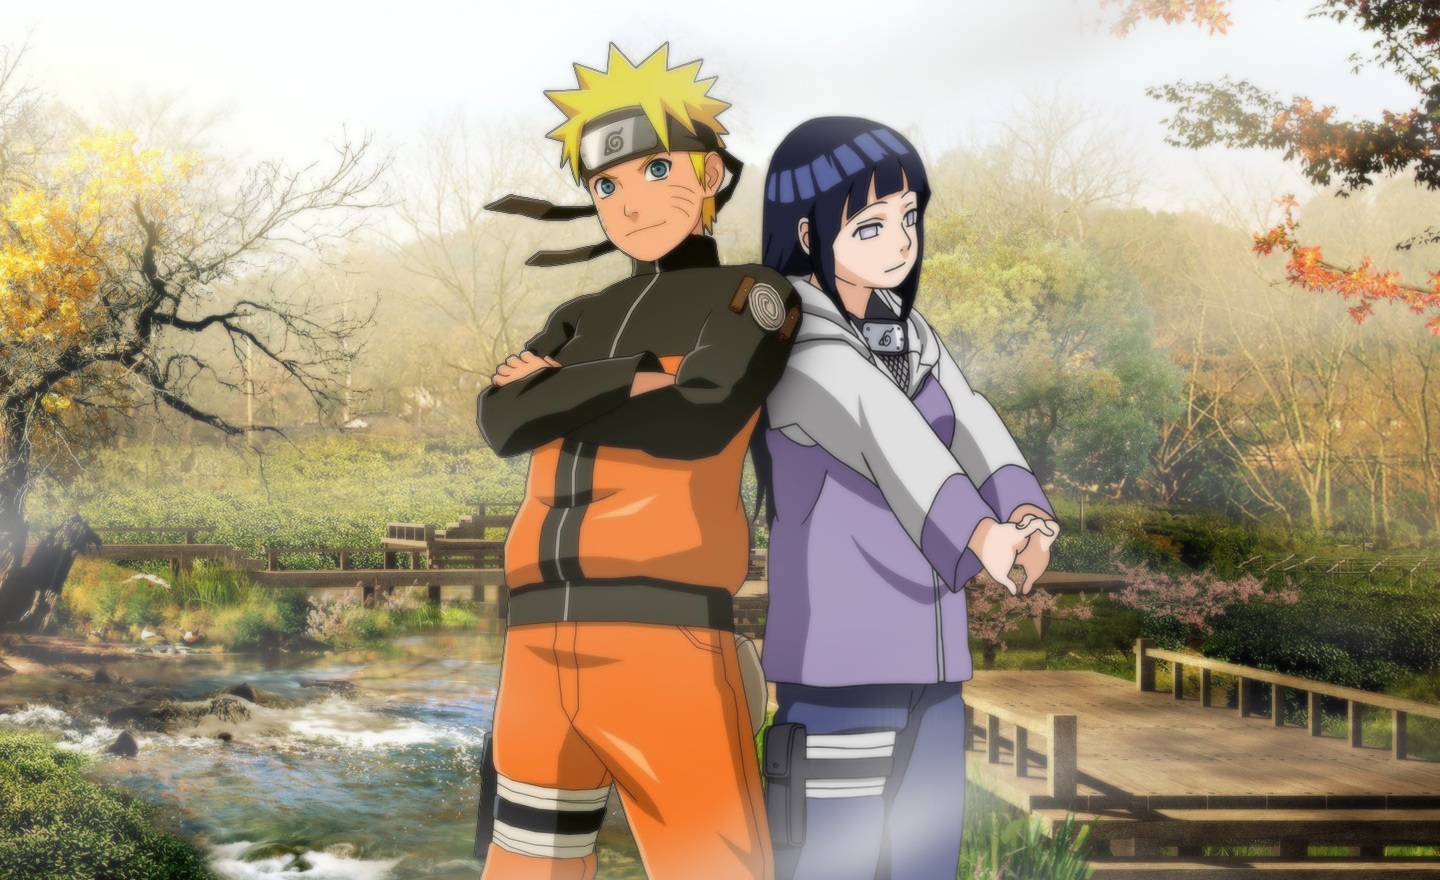 Naruto And Hinata Image Anime Fans Of Moddb Mod Db